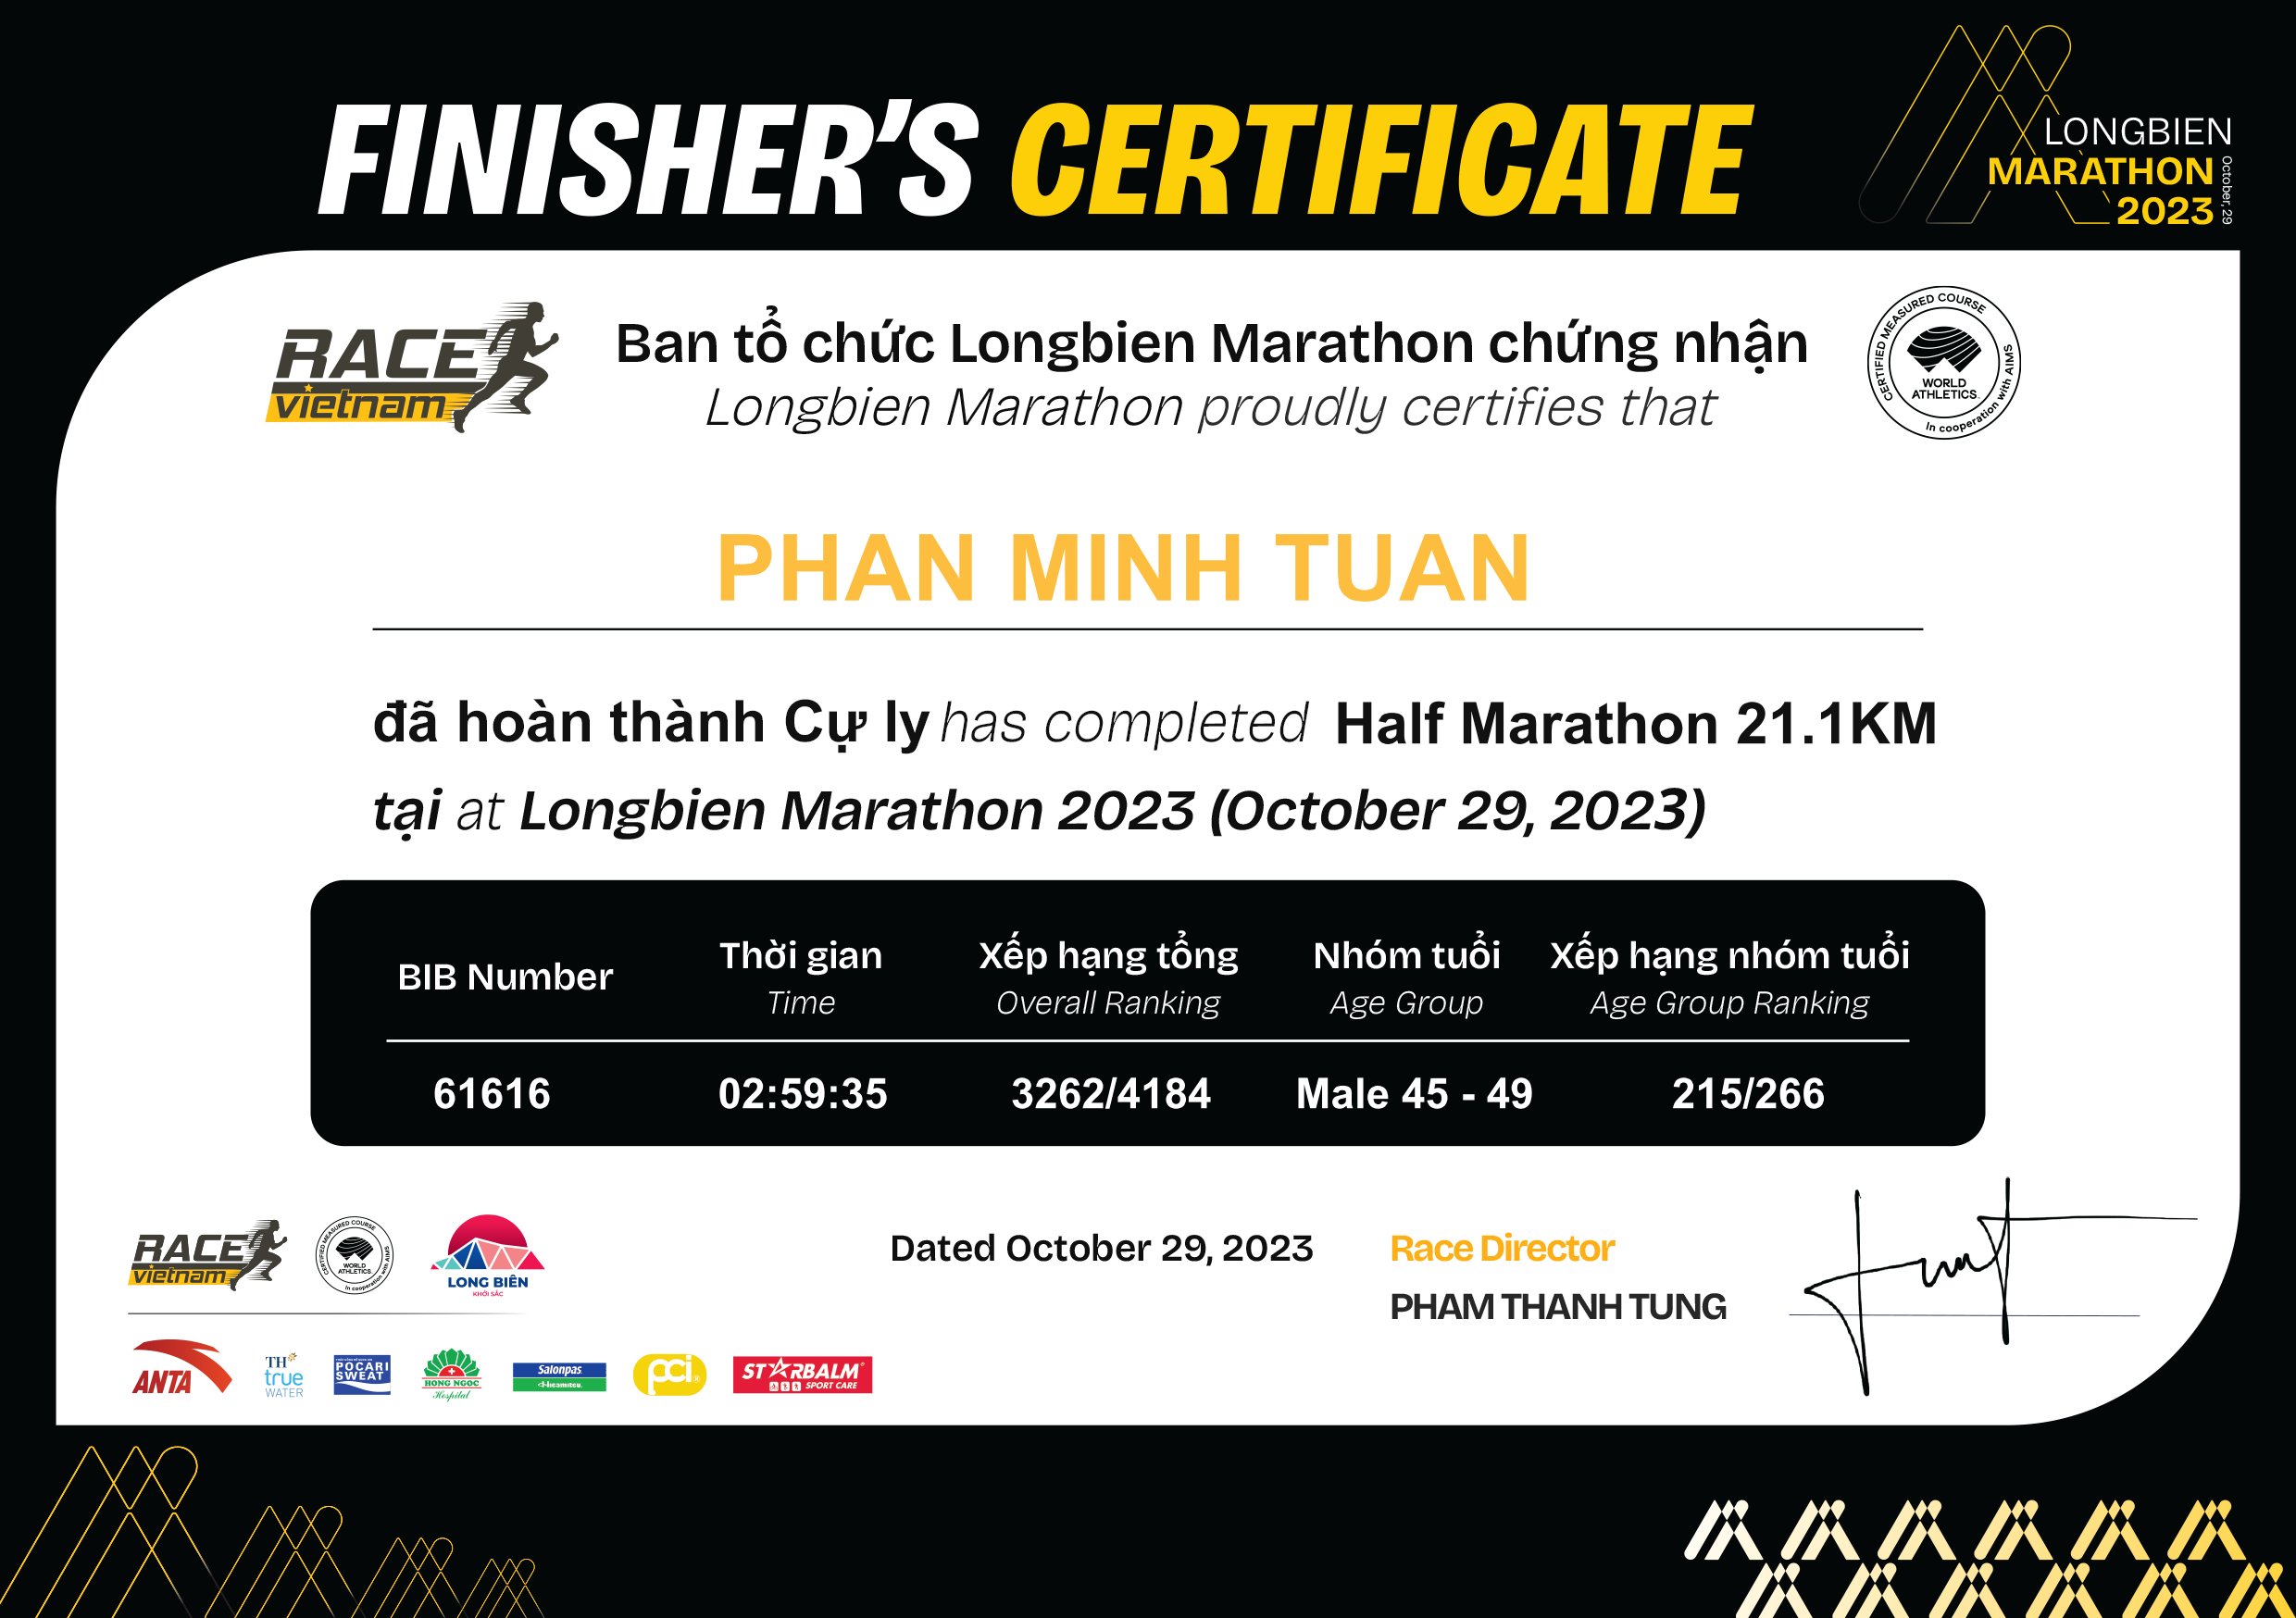 61616 - Phan Minh Tuan